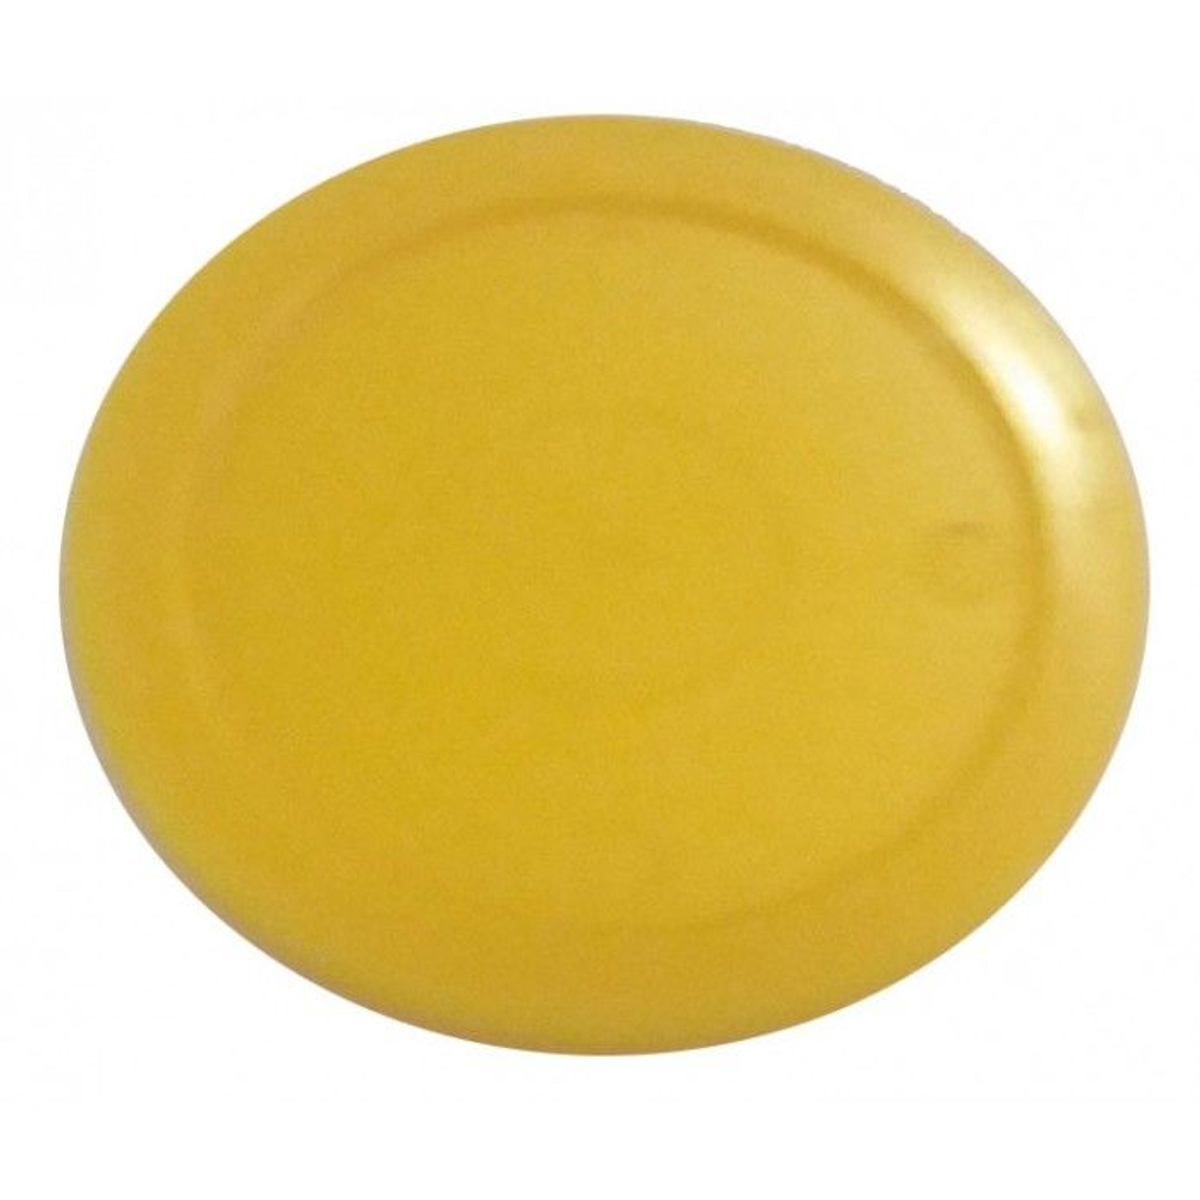 TopTable airhockey puck geel 63mm